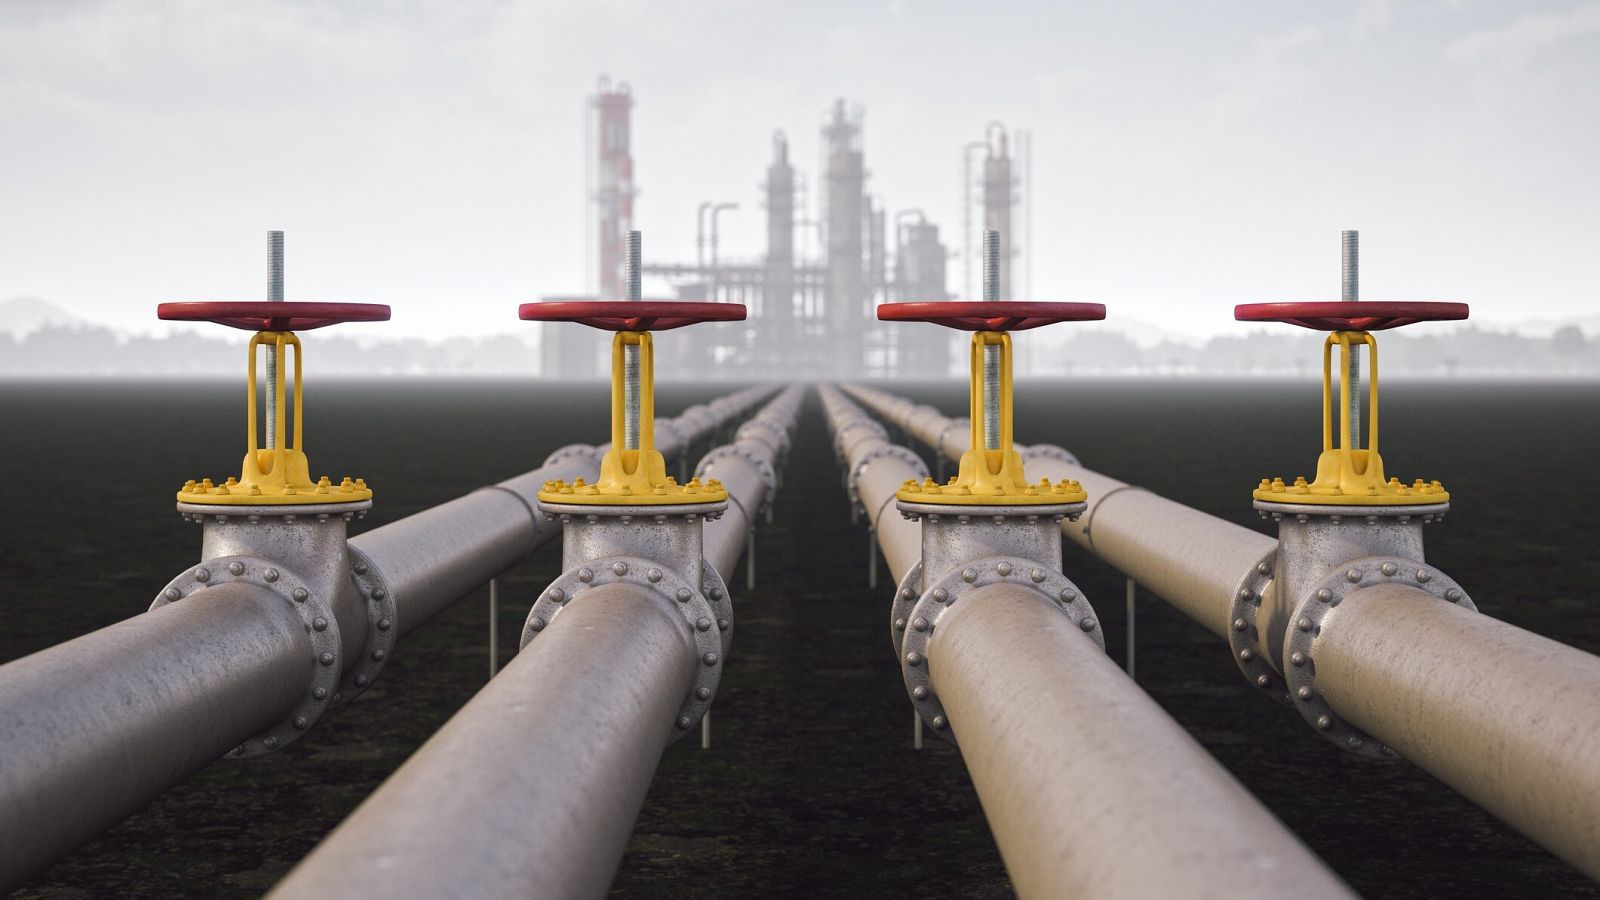 Oleoducto y refinería de petróleo